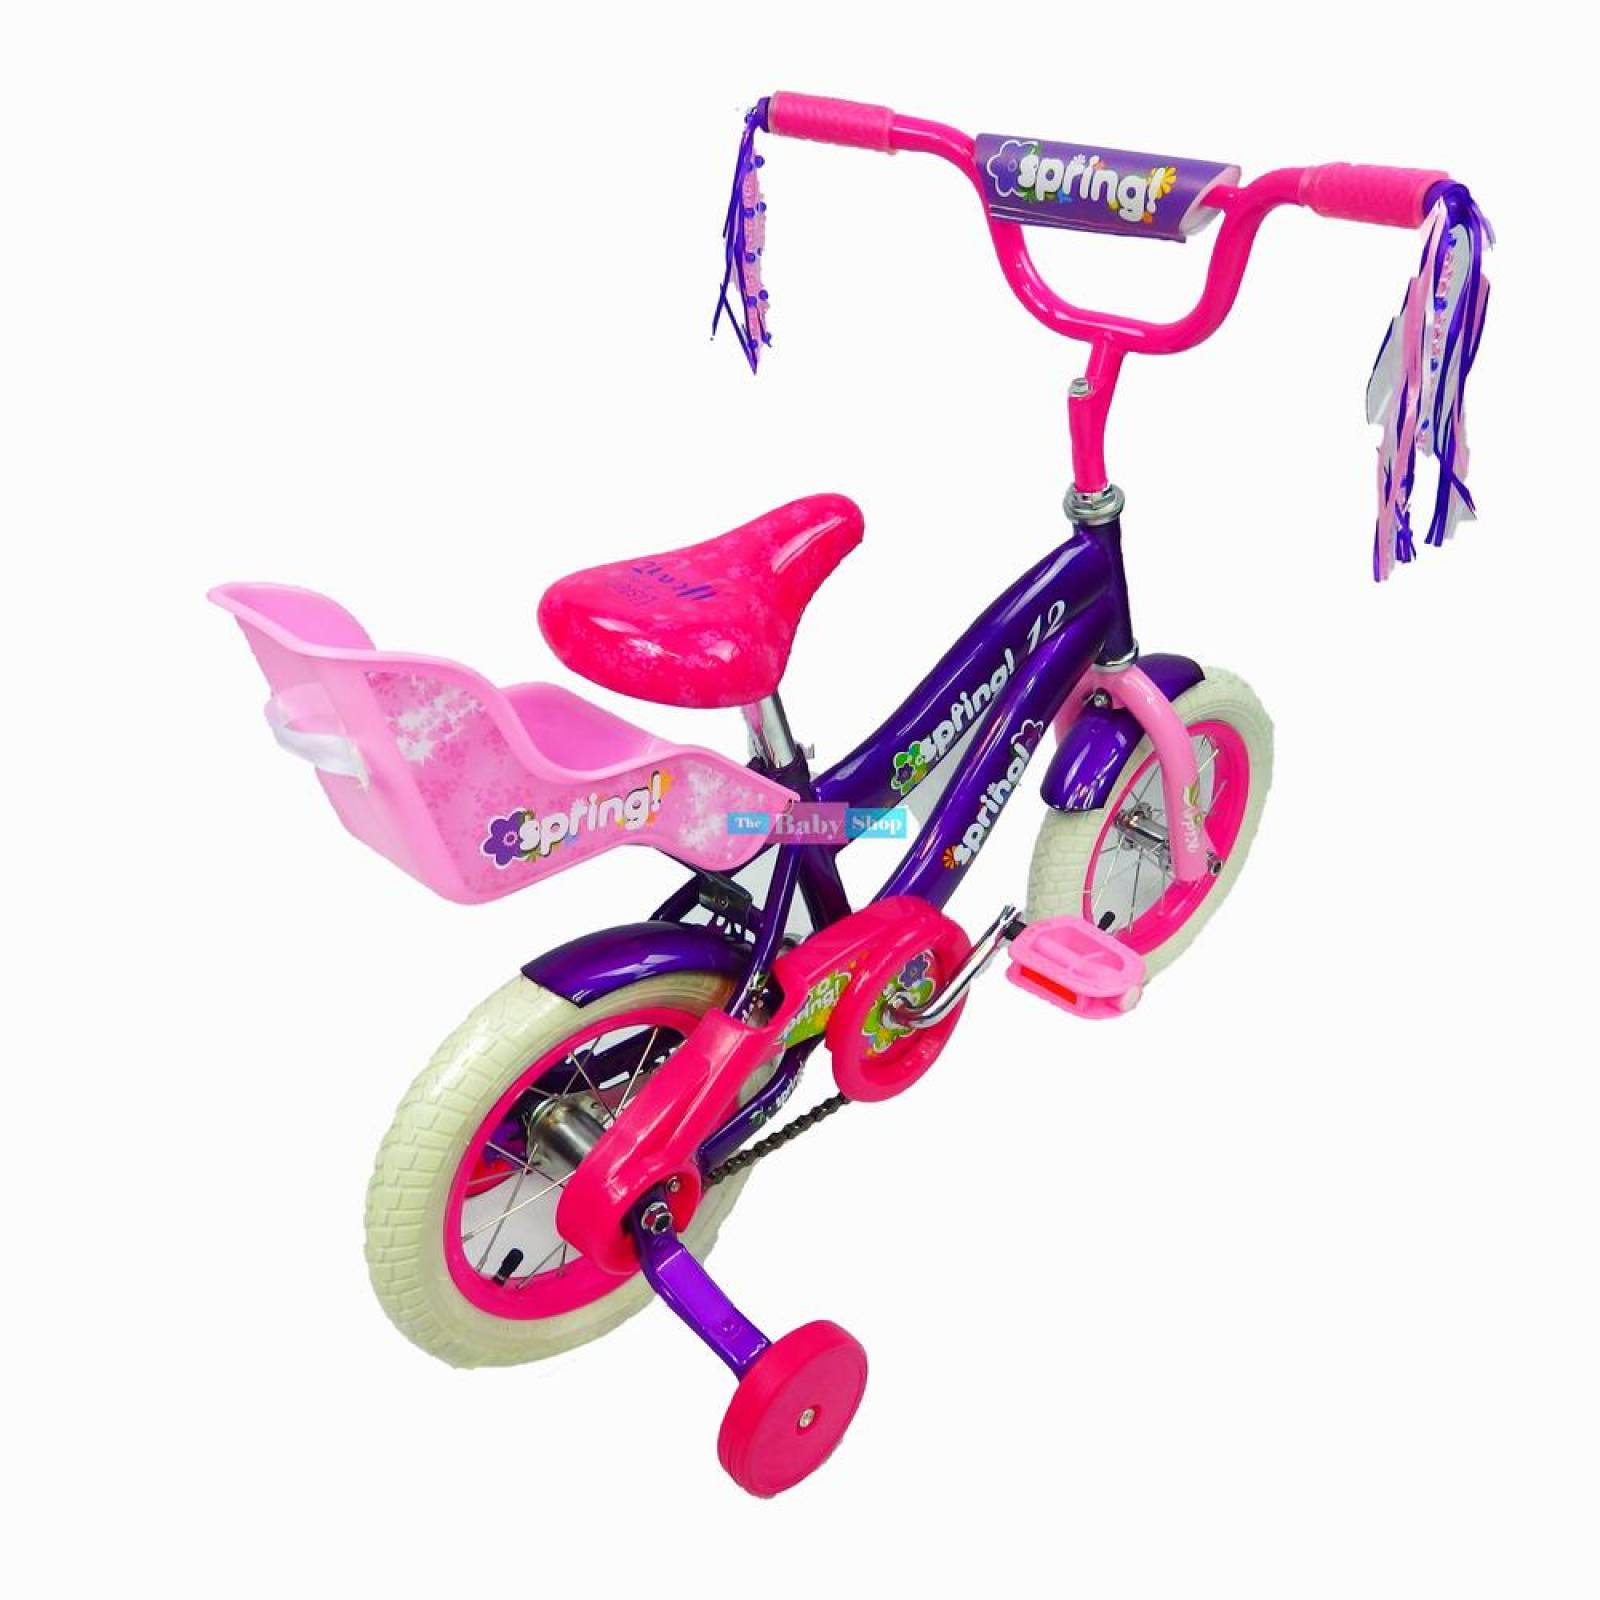 Bicicleta Infantil r12 Rodada para niña Barata con Portamuñeca 